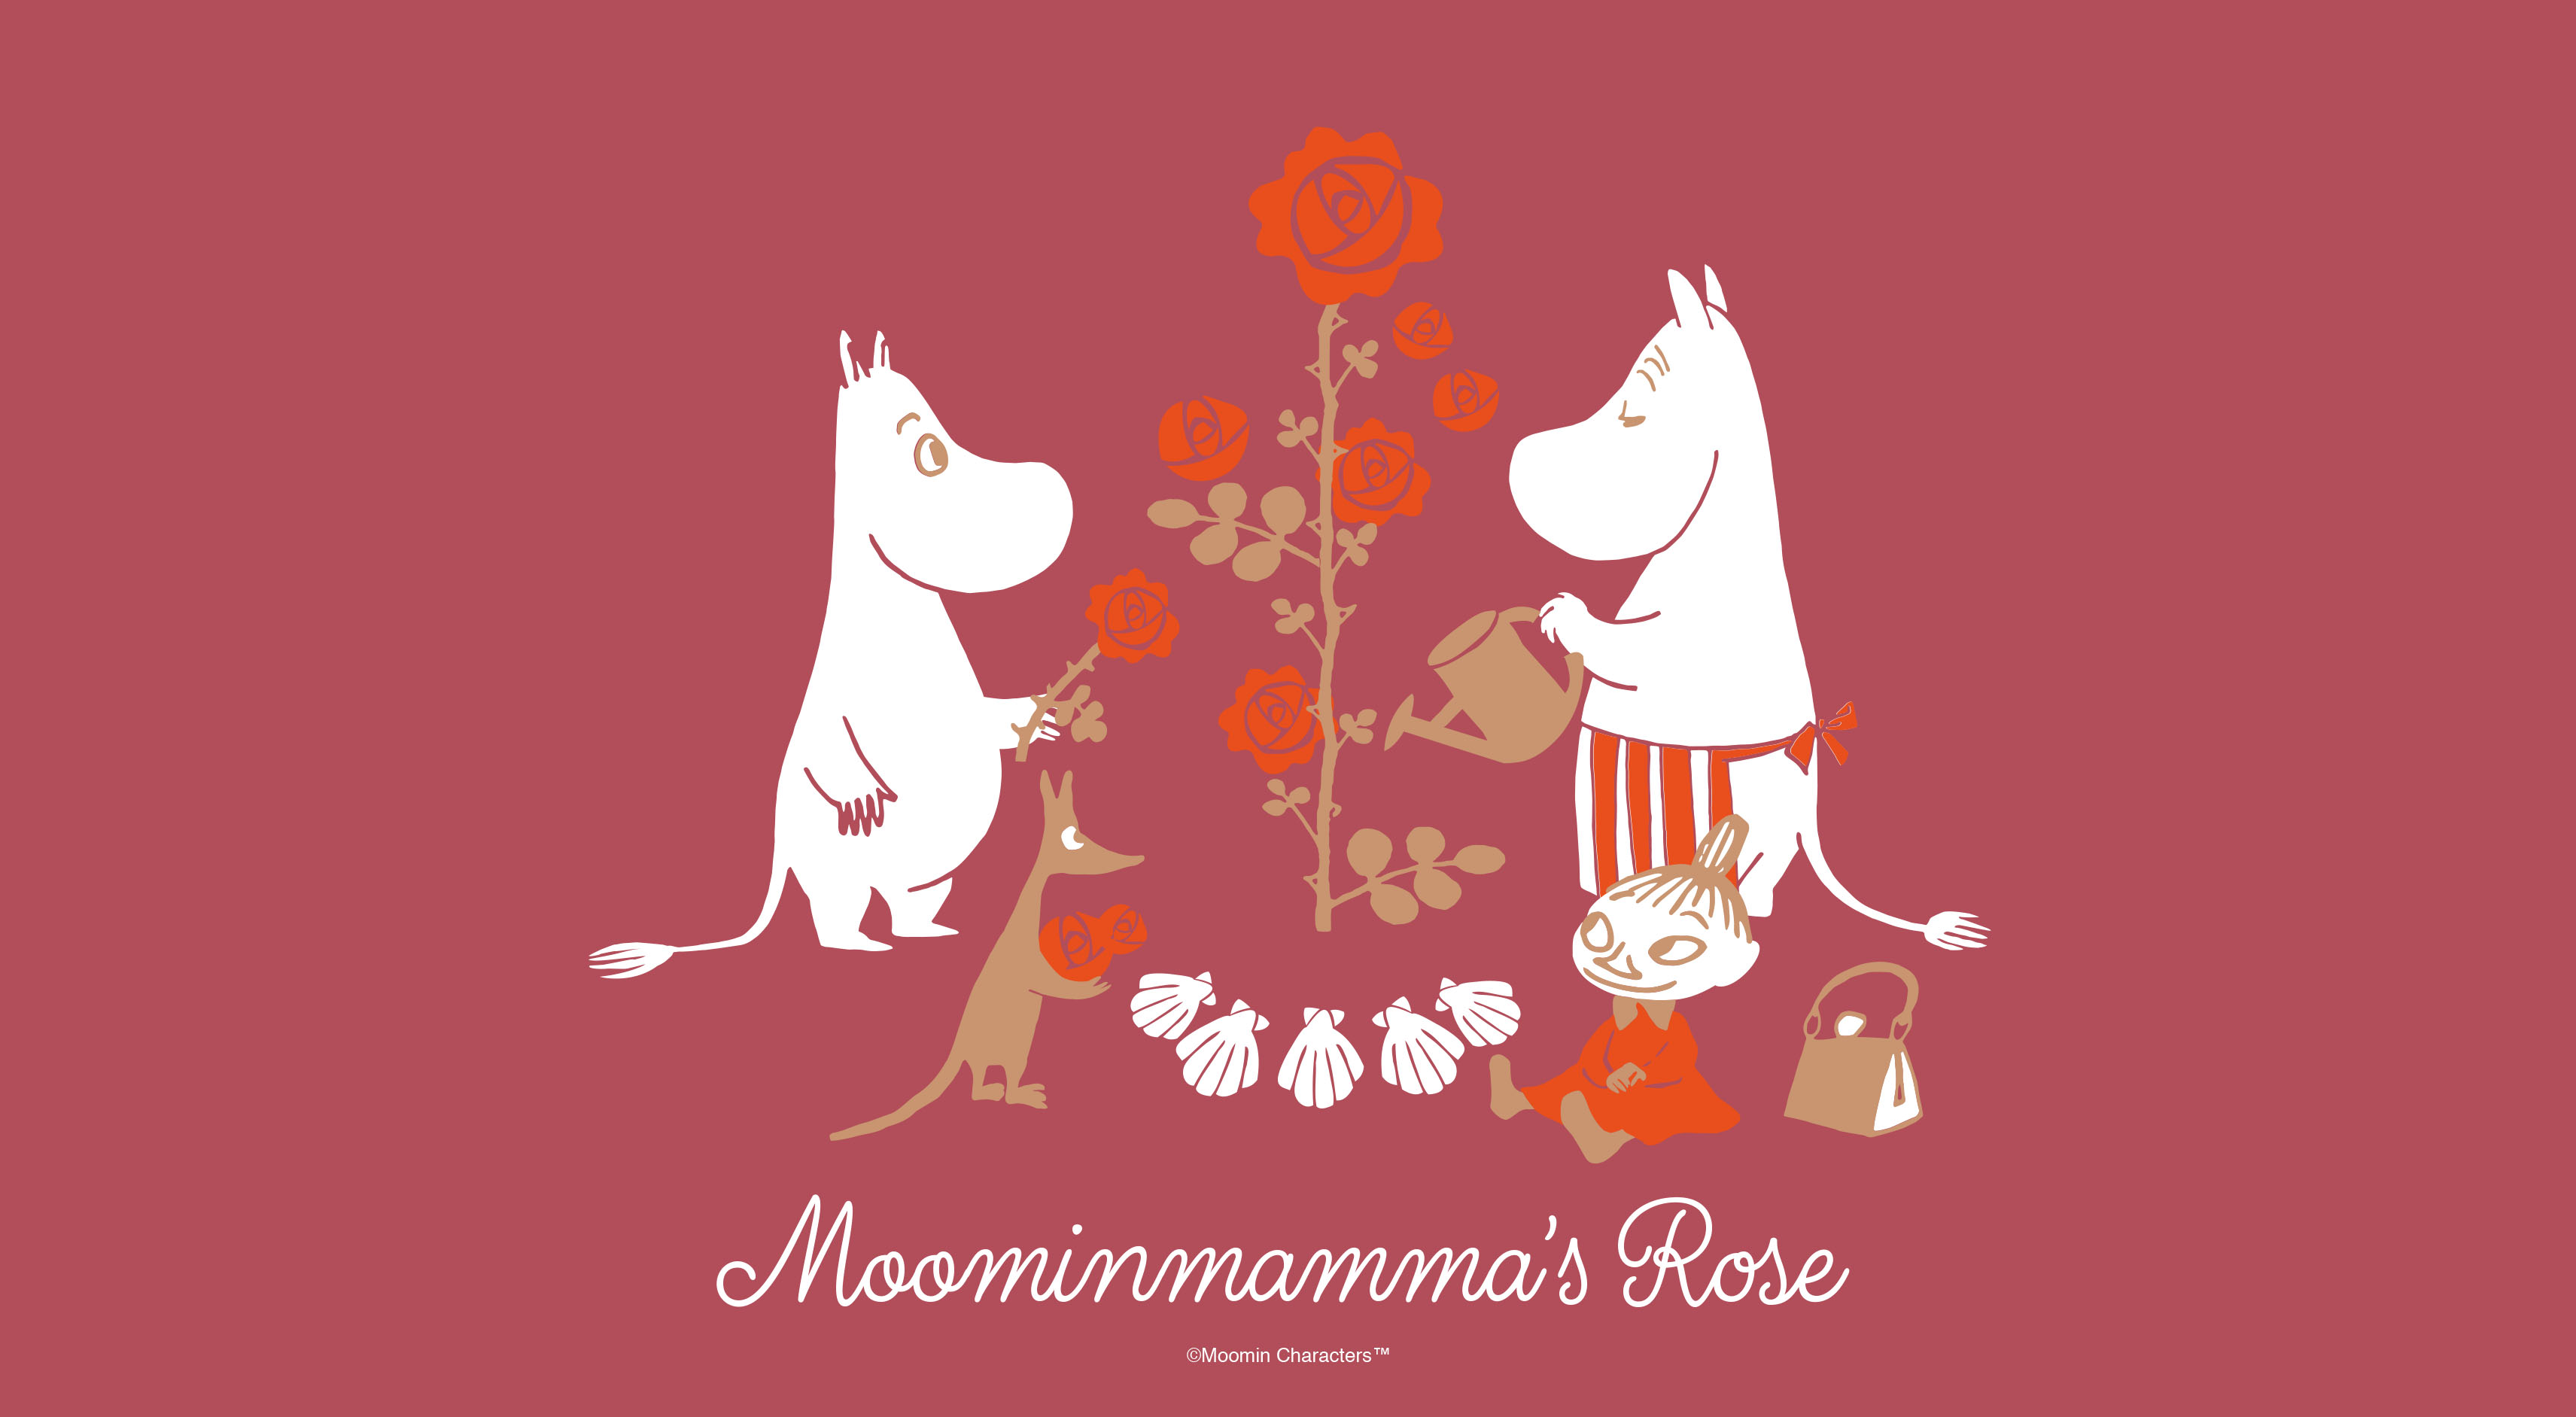 テーマは感謝の心 ムーミンのあらたなシリーズ Moominmamma S Rose 誕生 株式会社ライツ アンド ブランズのプレスリリース